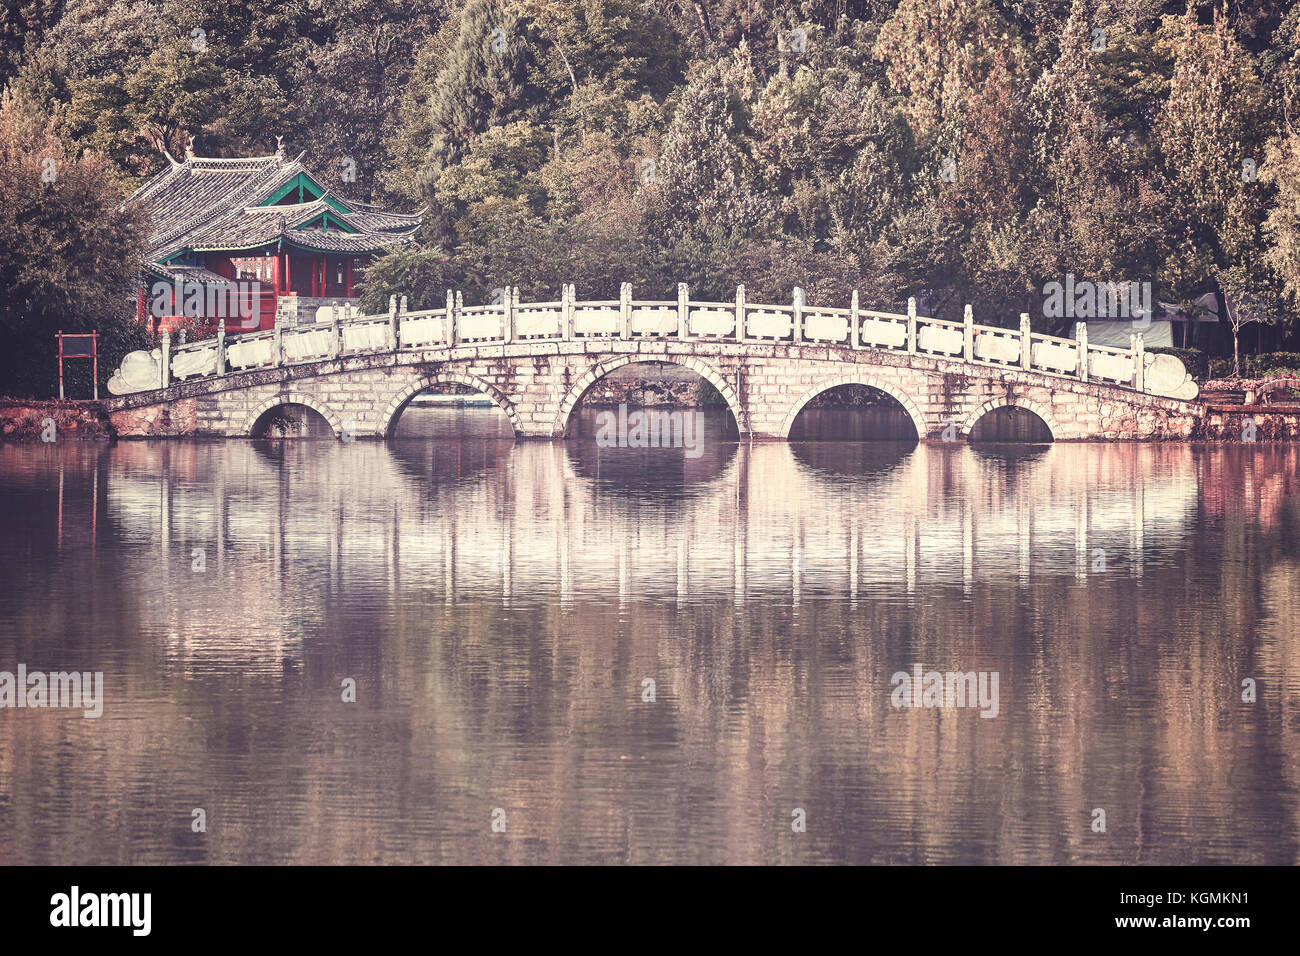 Retro getonten Bild von suocui Brücke durch den Pool des Schwarzen Drachens in Jade Spring Park, Lijiang, China. Stockfoto